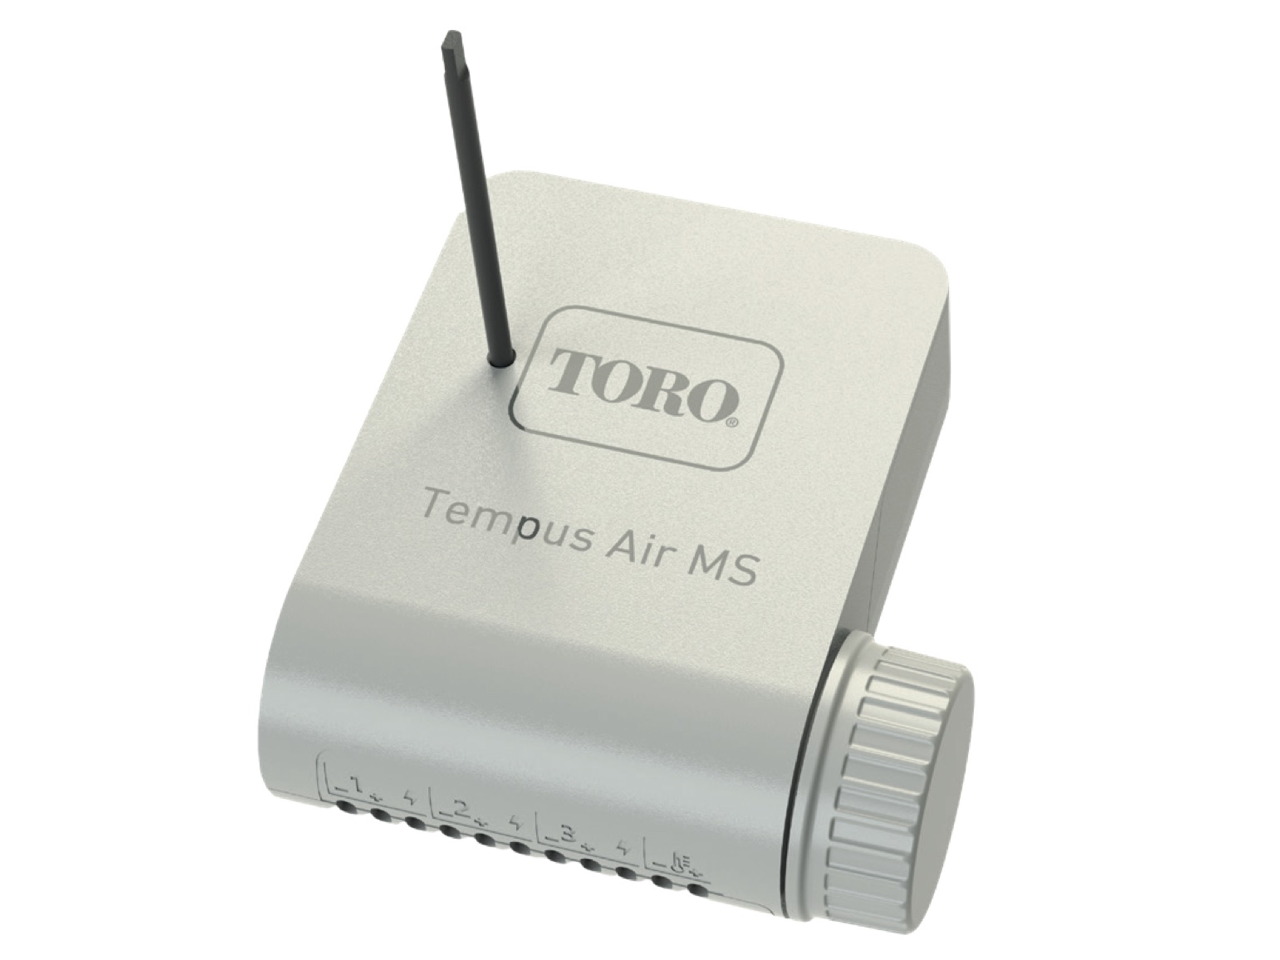 The Toro Company Tempus Air MS